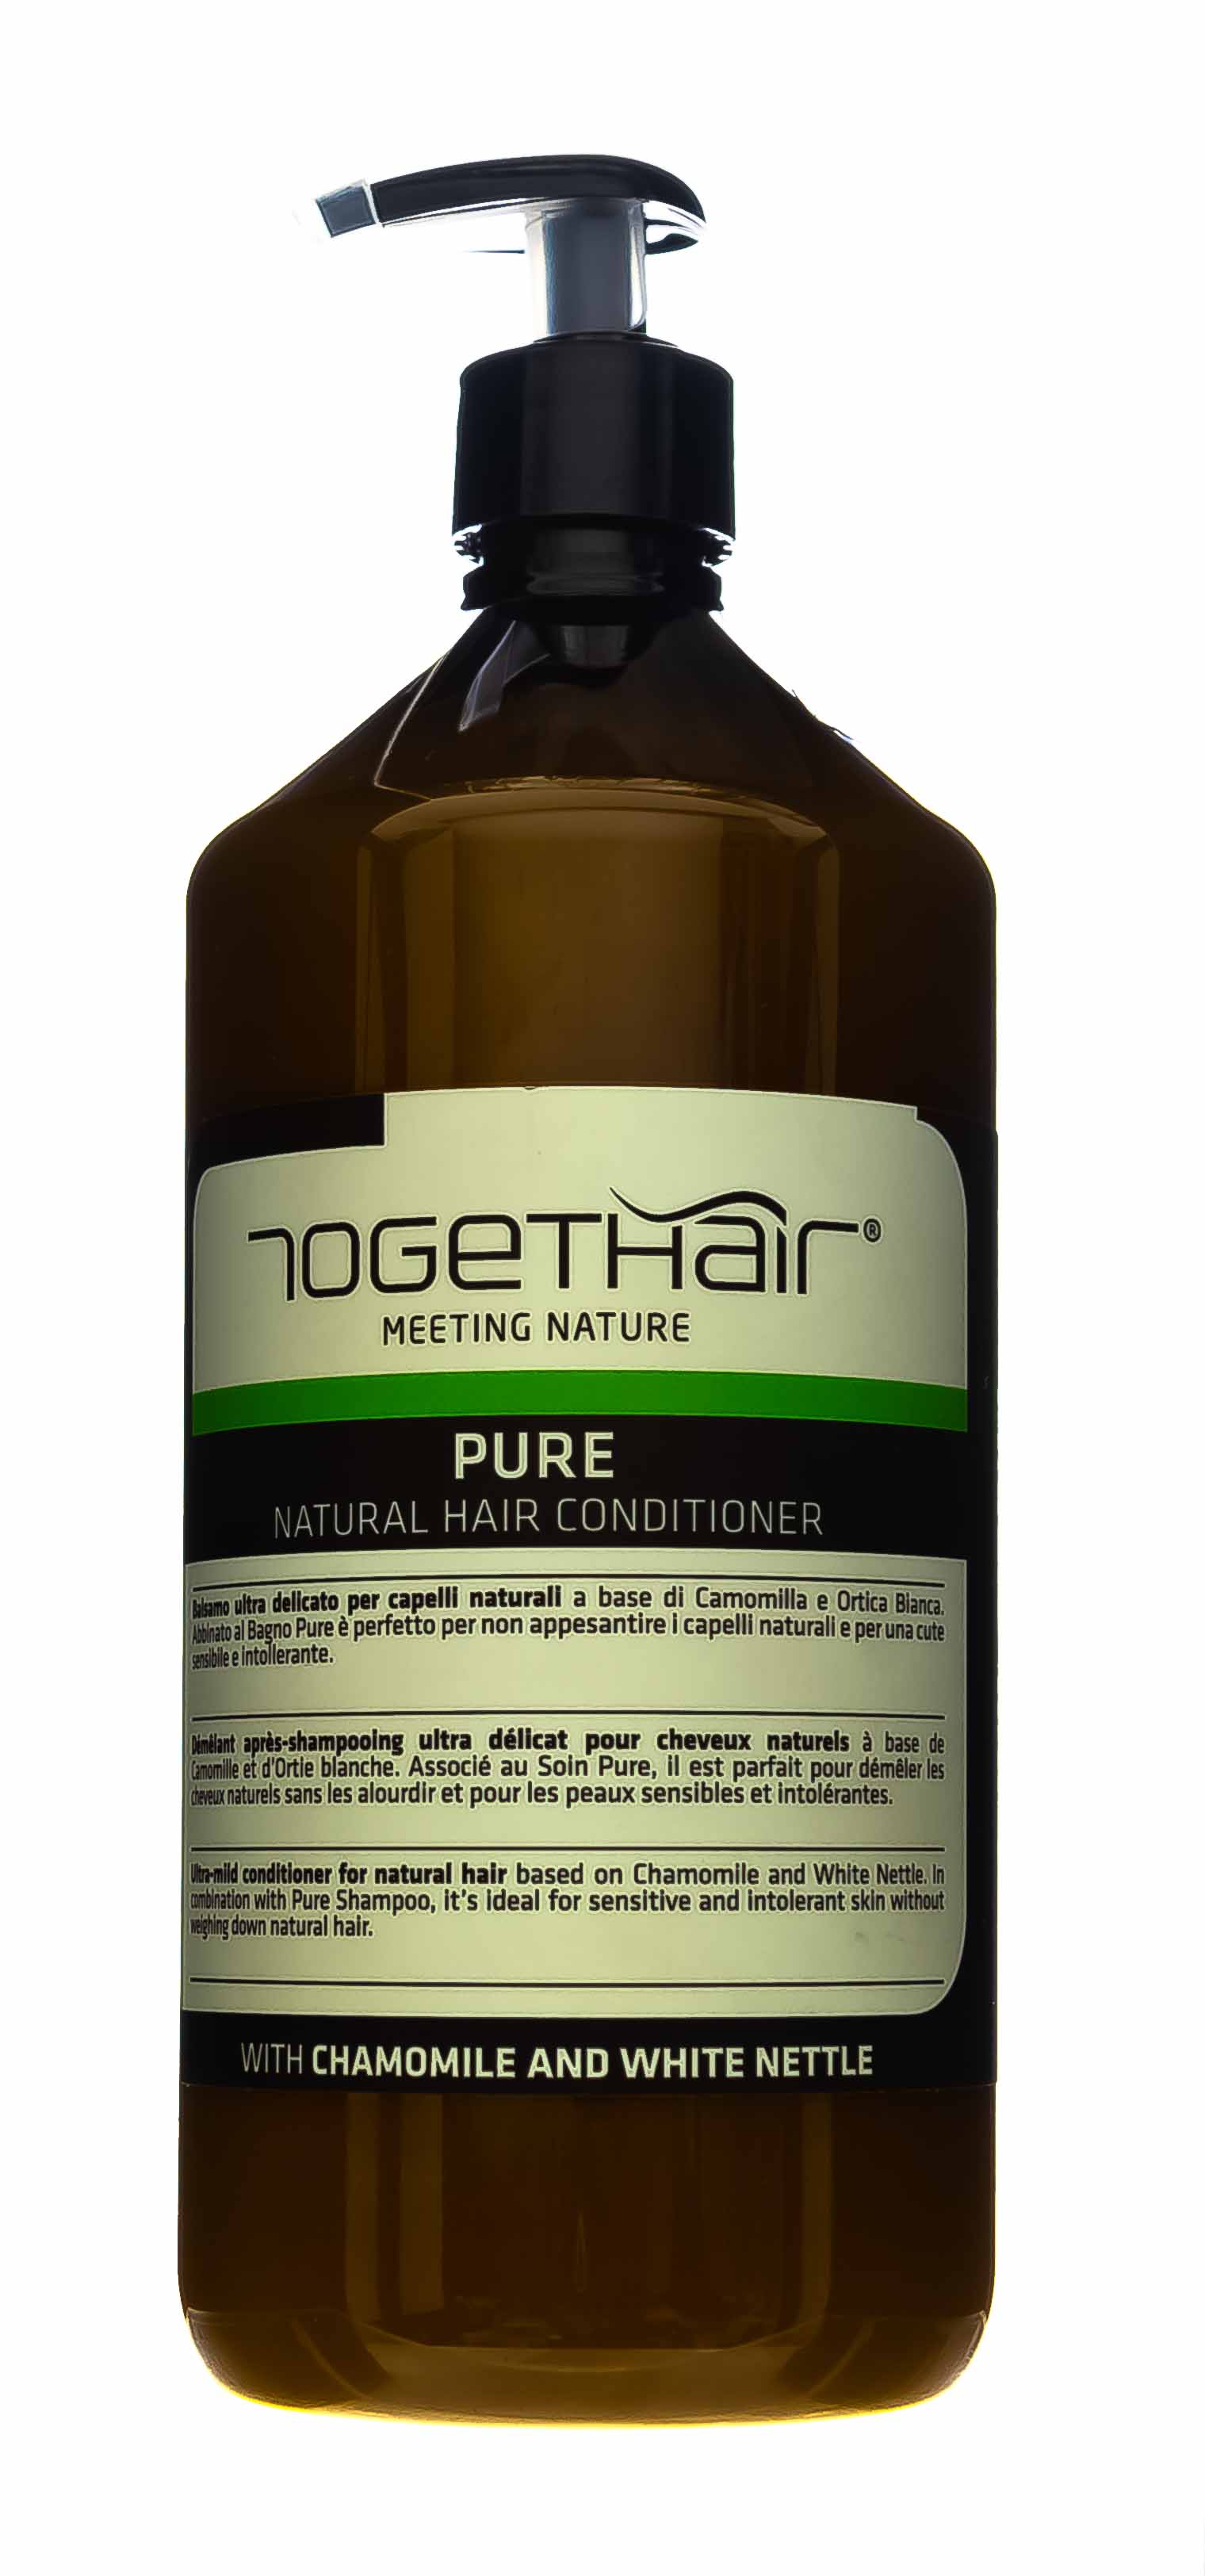 Togethair Ультра-мягкий кондиционер для натуральных волос, 1000 мл (Togethair, Pure) togethair кондиционер для объема тонких волос 250 мл togethair volume